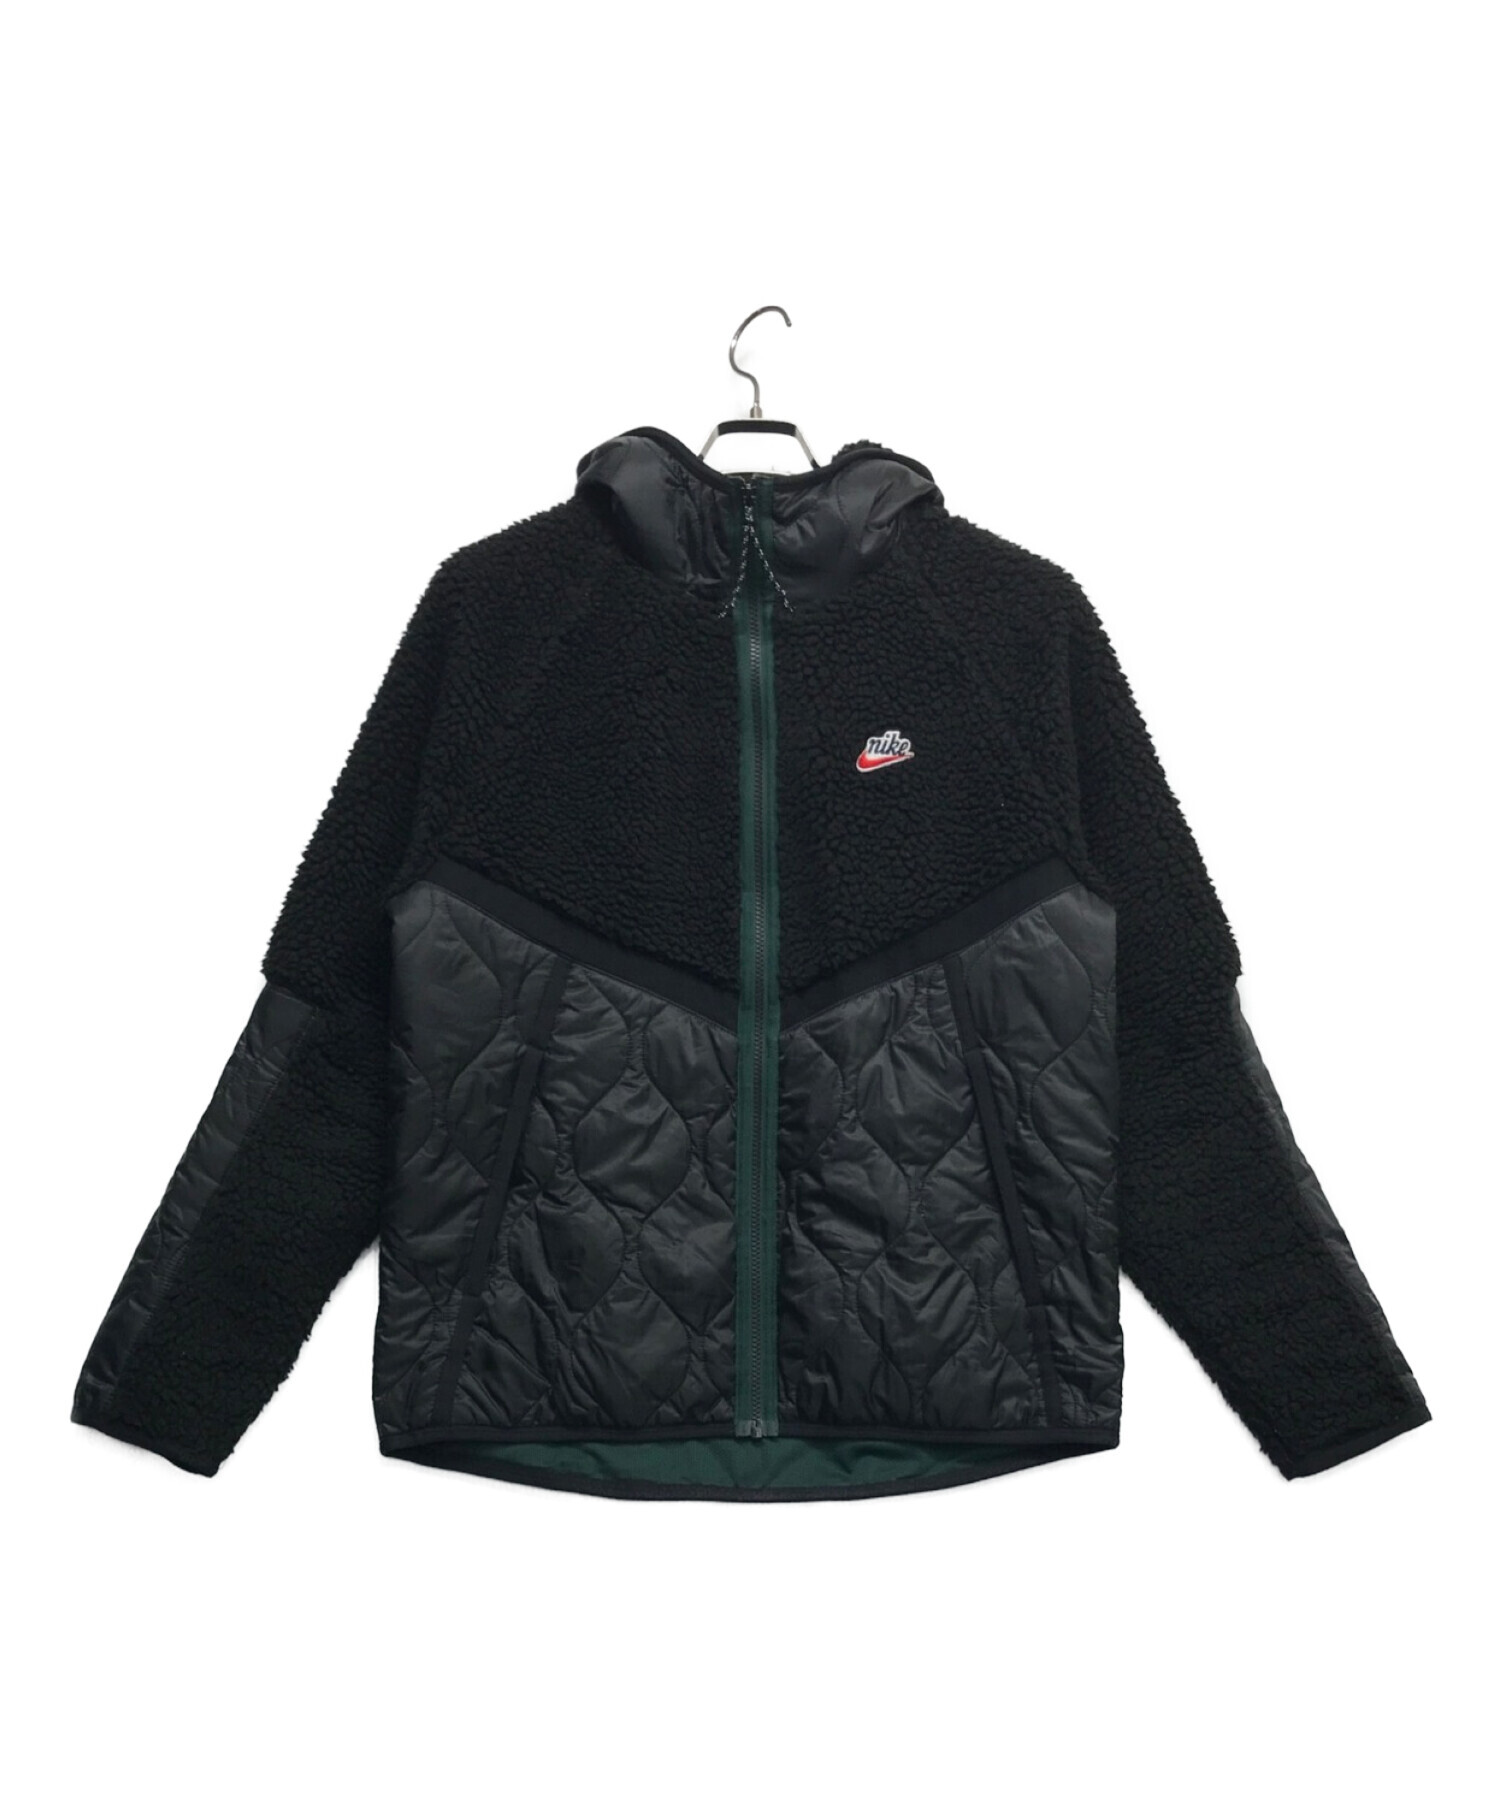 NIKE (ナイキ) ボアフリース キルティングジャケット ブラック サイズ:L